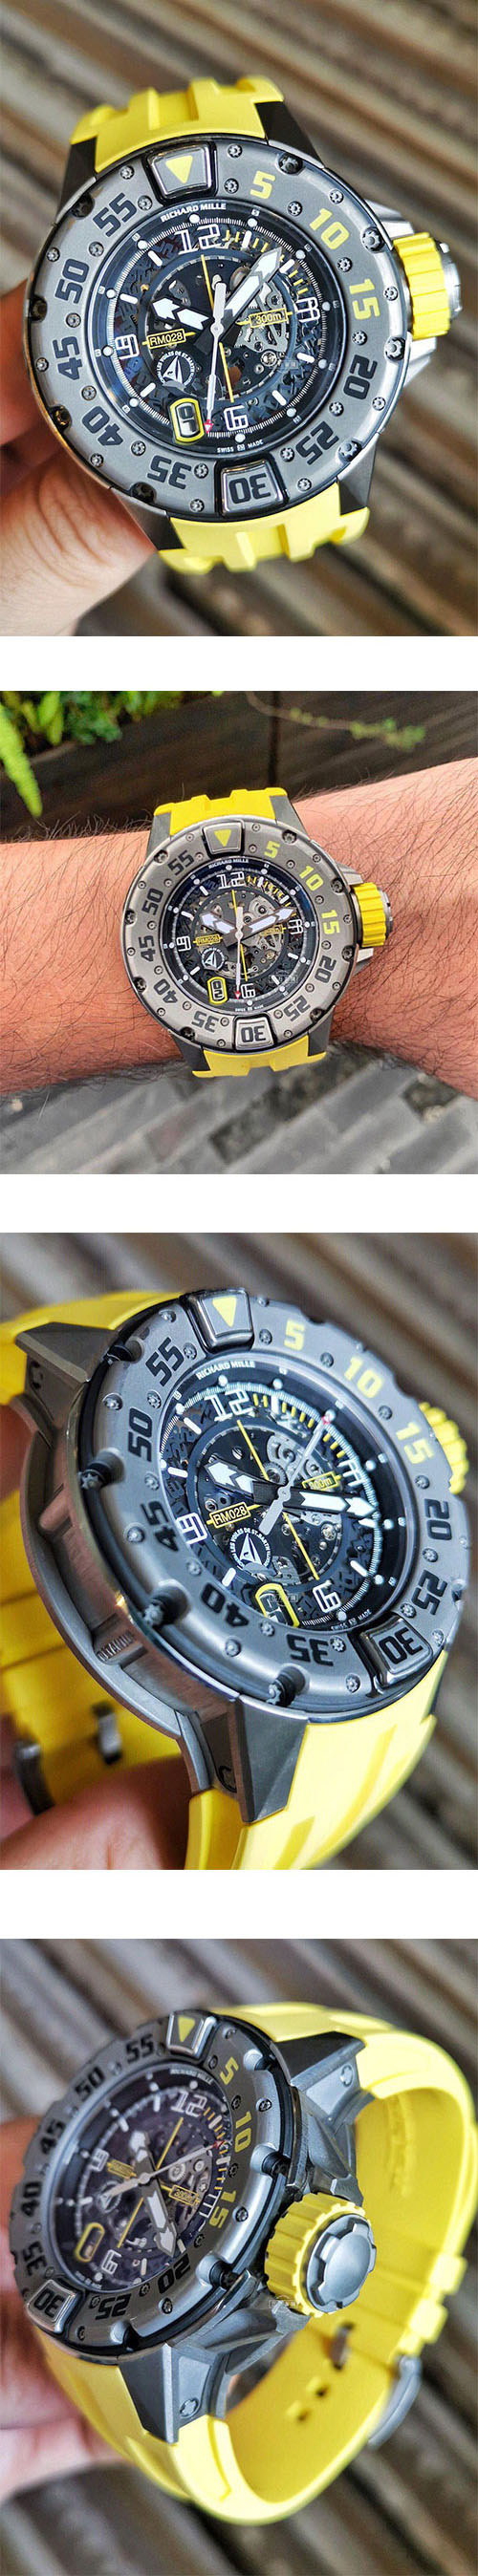 ファッション時計 Richard Mille AUTOMATIC RM028コピー時計 スケルトン文字盤 デイト表示 クロノメータ